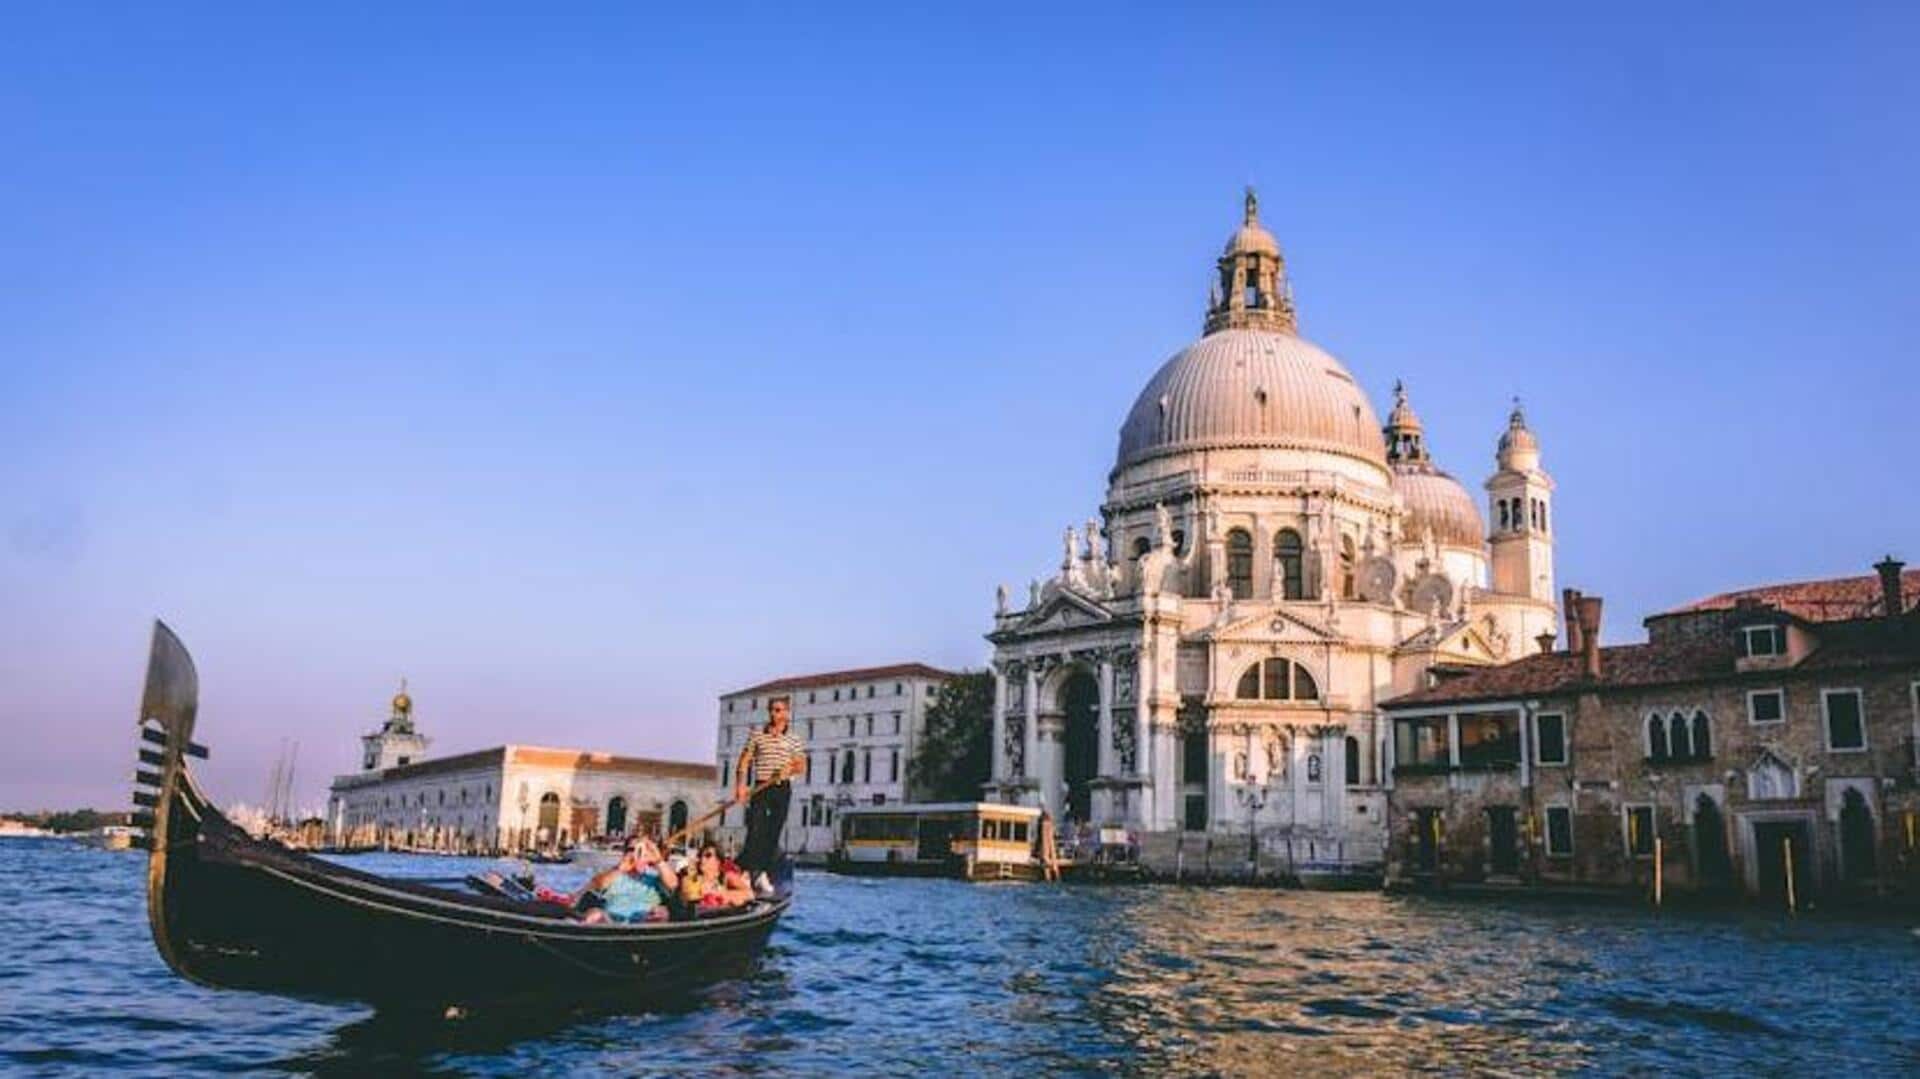 Delve into Venice's secret craftsmanship